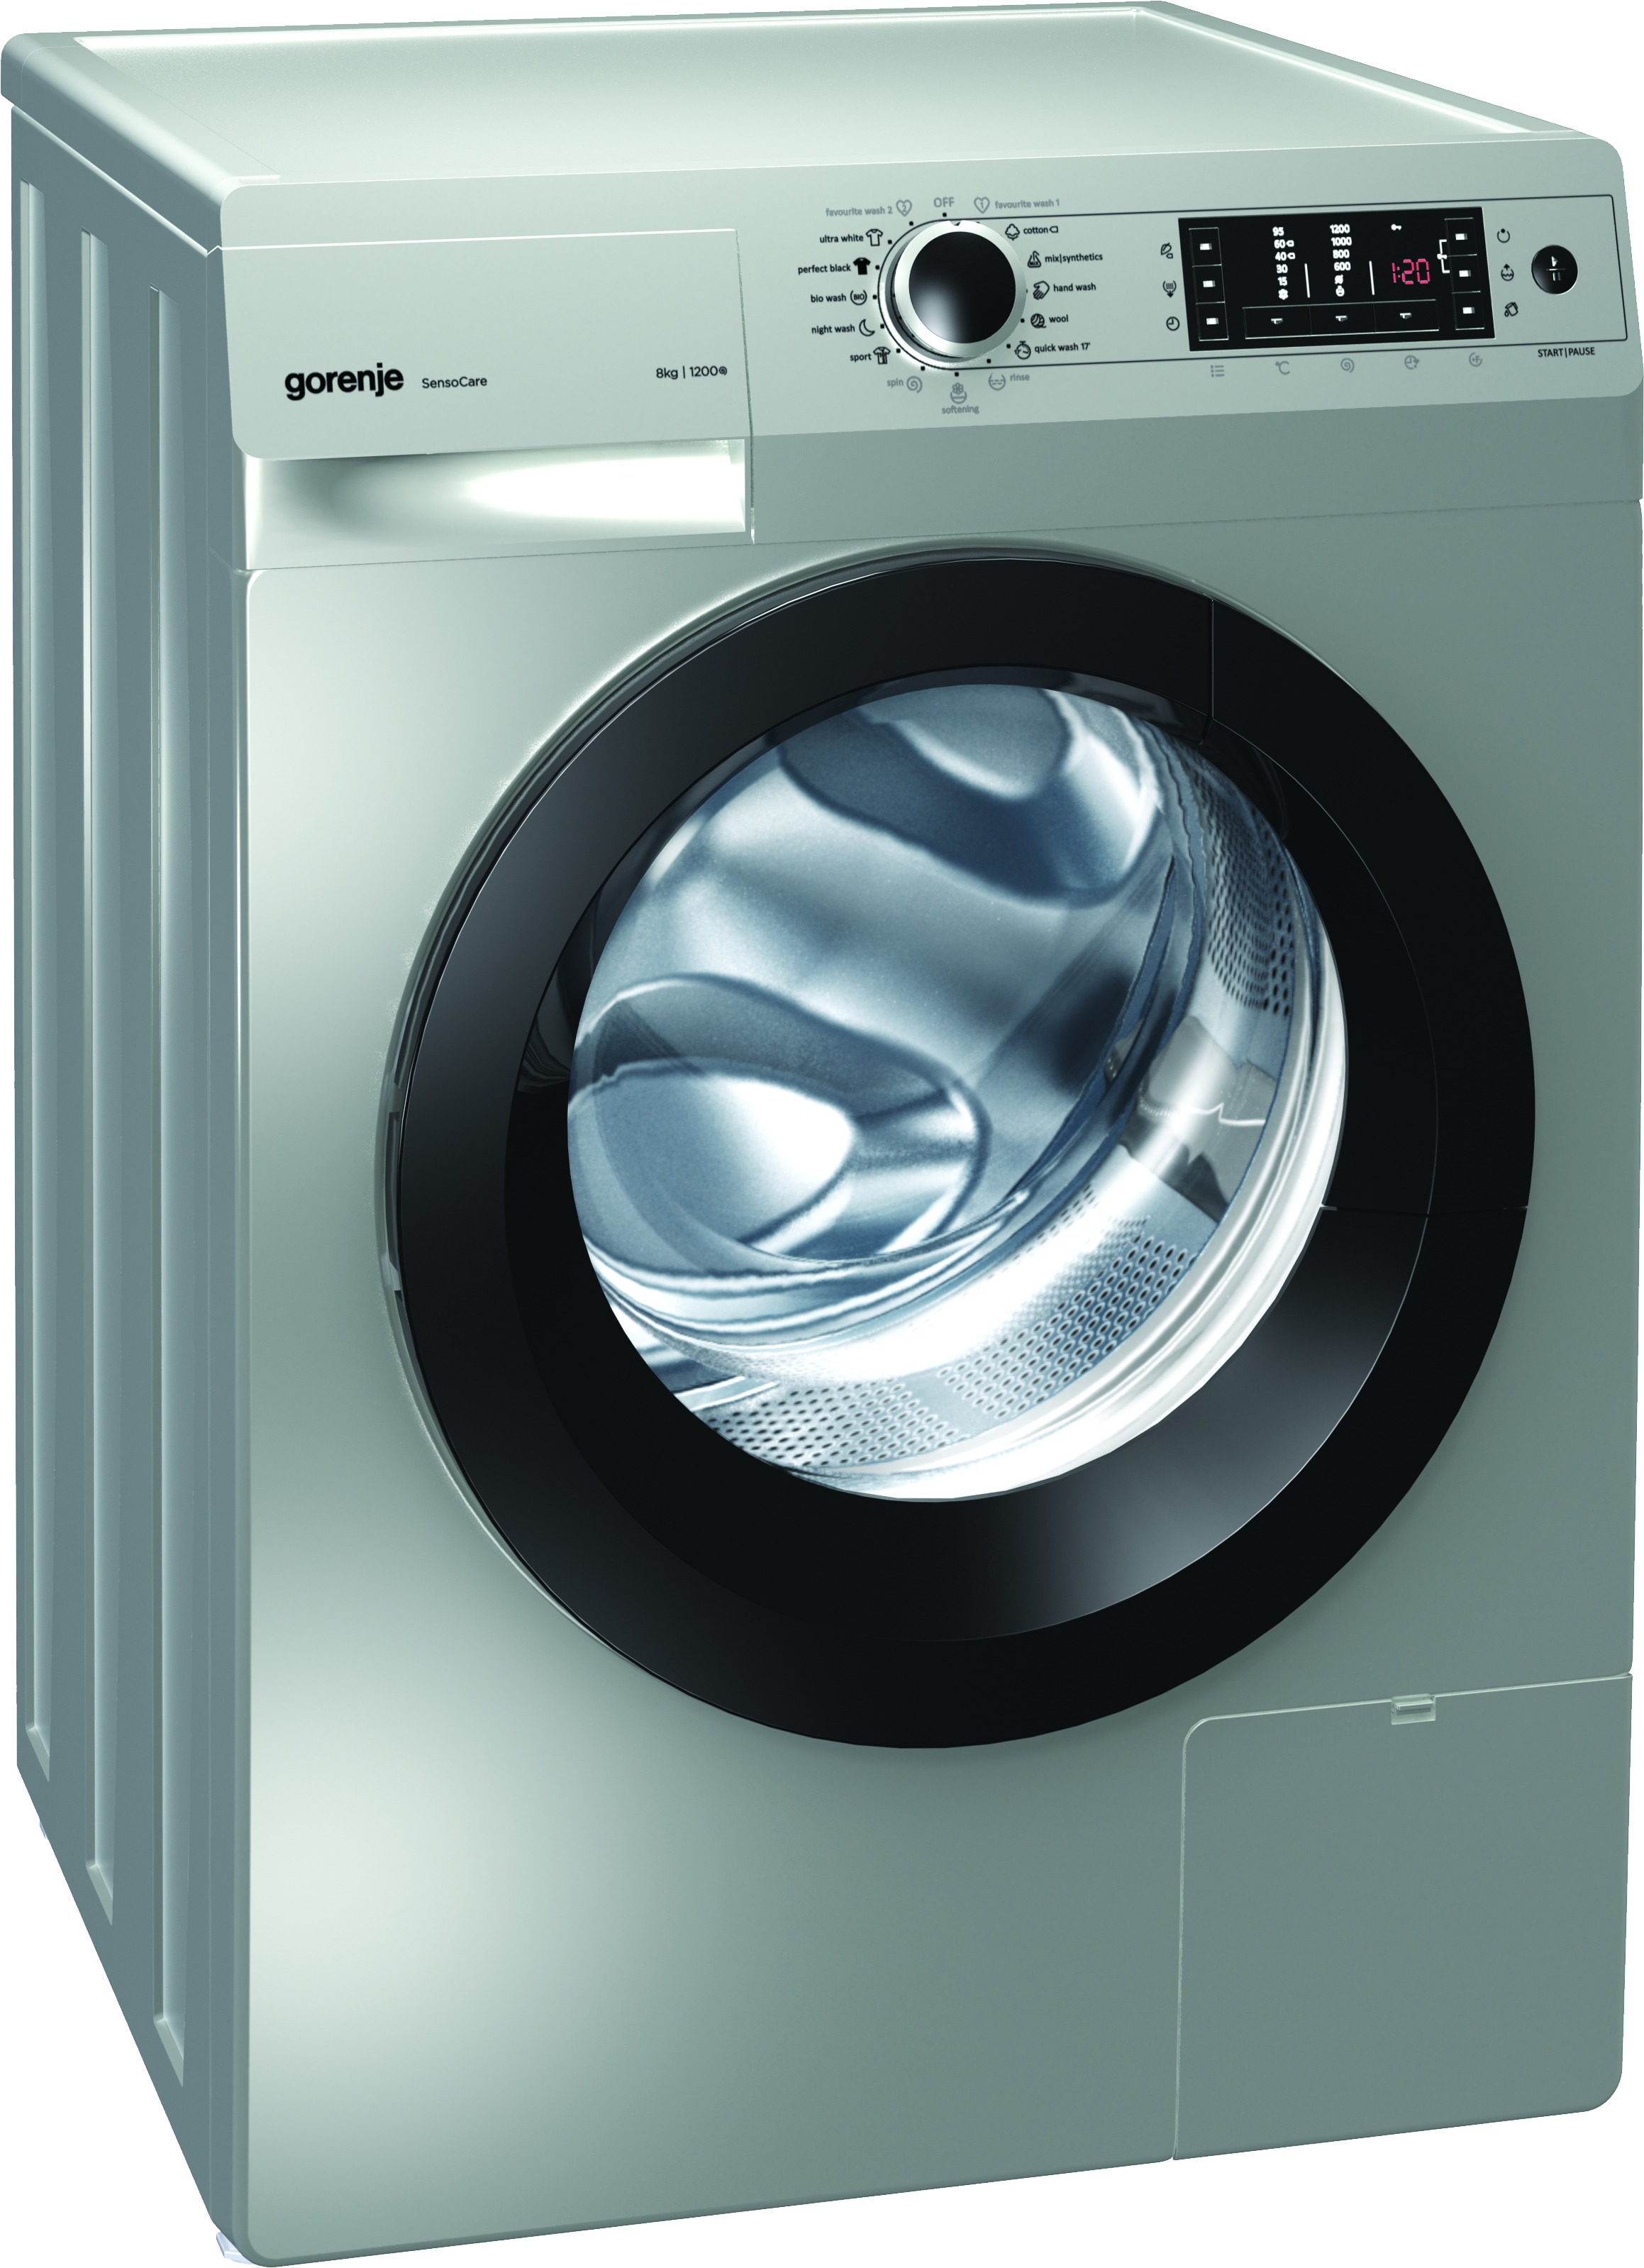 Laundry Washing Machine Transparent File